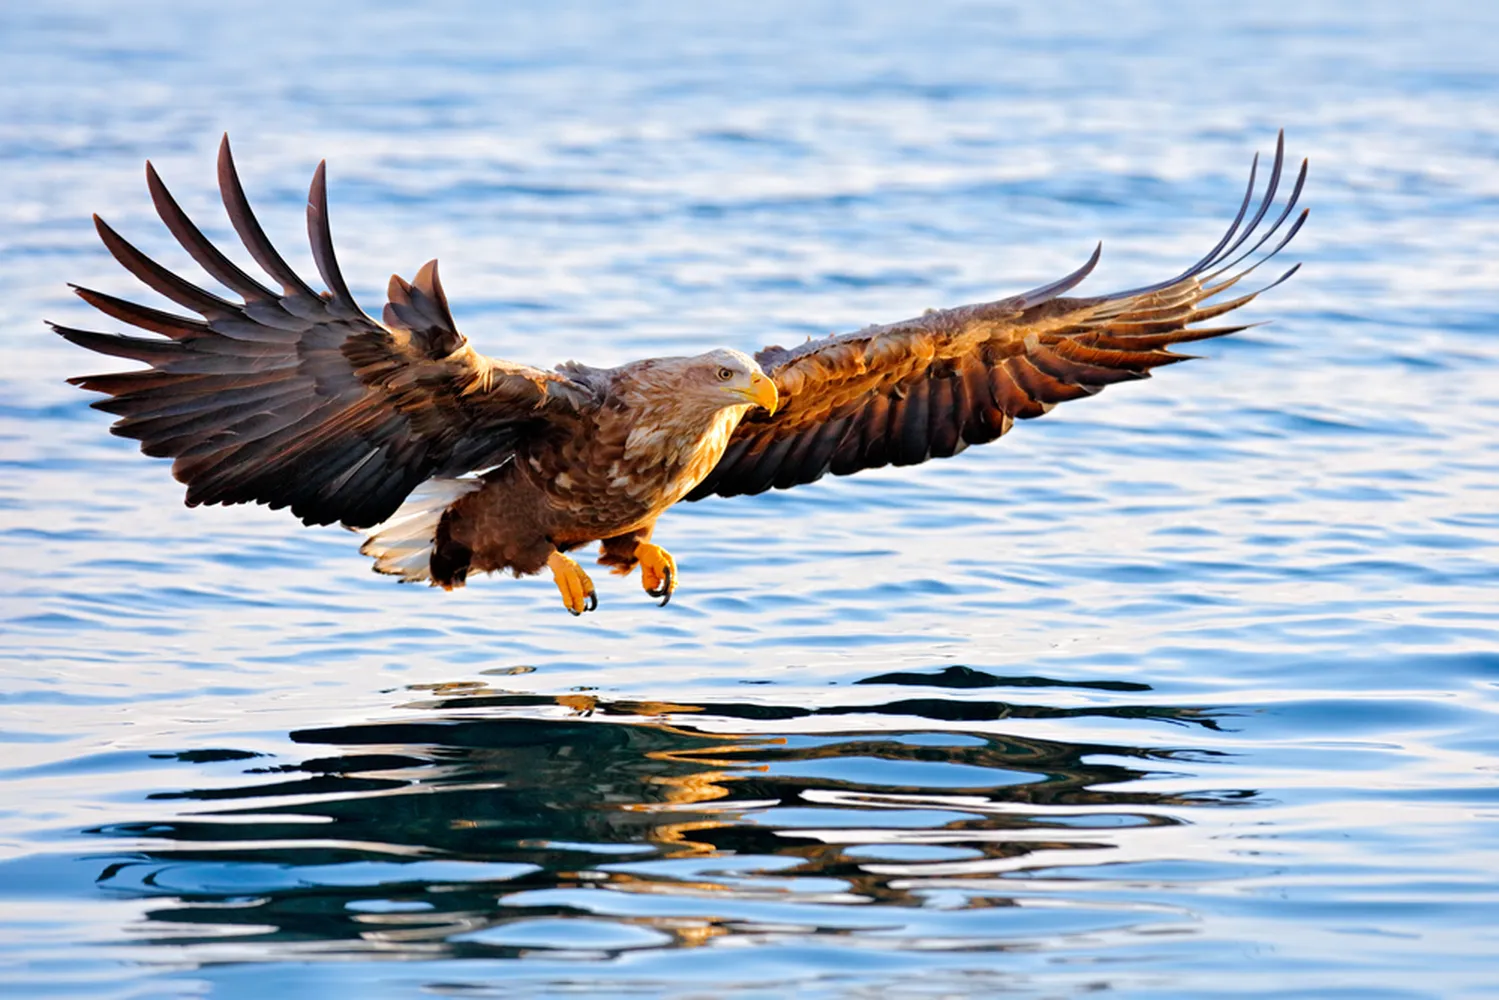 پوستر حیوانات طرح پرواز عقاب بر فراز دریا